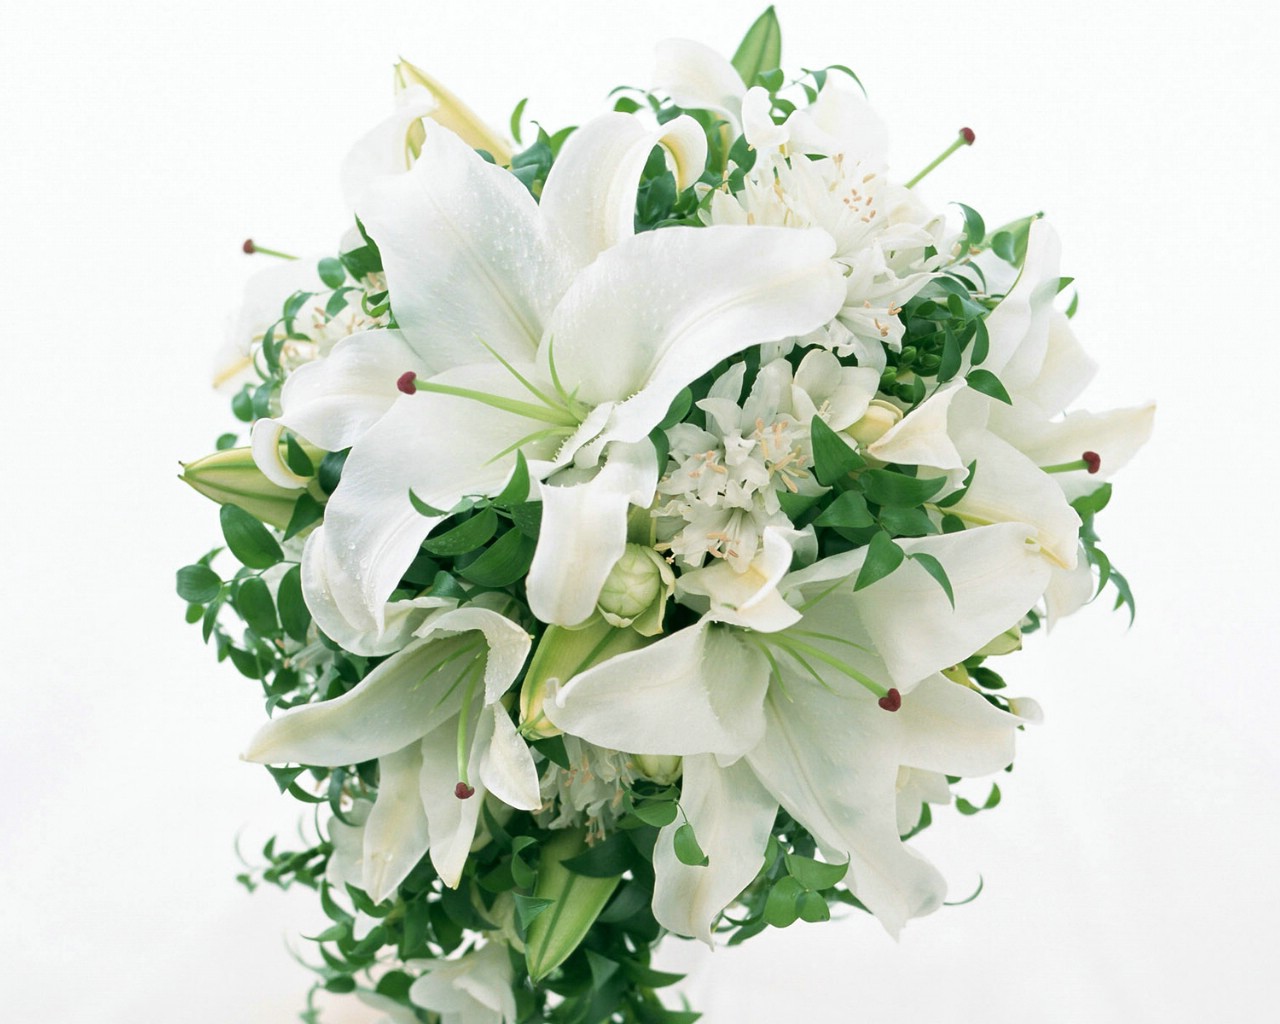 壁纸1280x1024白色花朵 2 5壁纸 白色花朵壁纸 白色花朵图片 白色花朵素材 花卉壁纸 花卉图库 花卉图片素材桌面壁纸